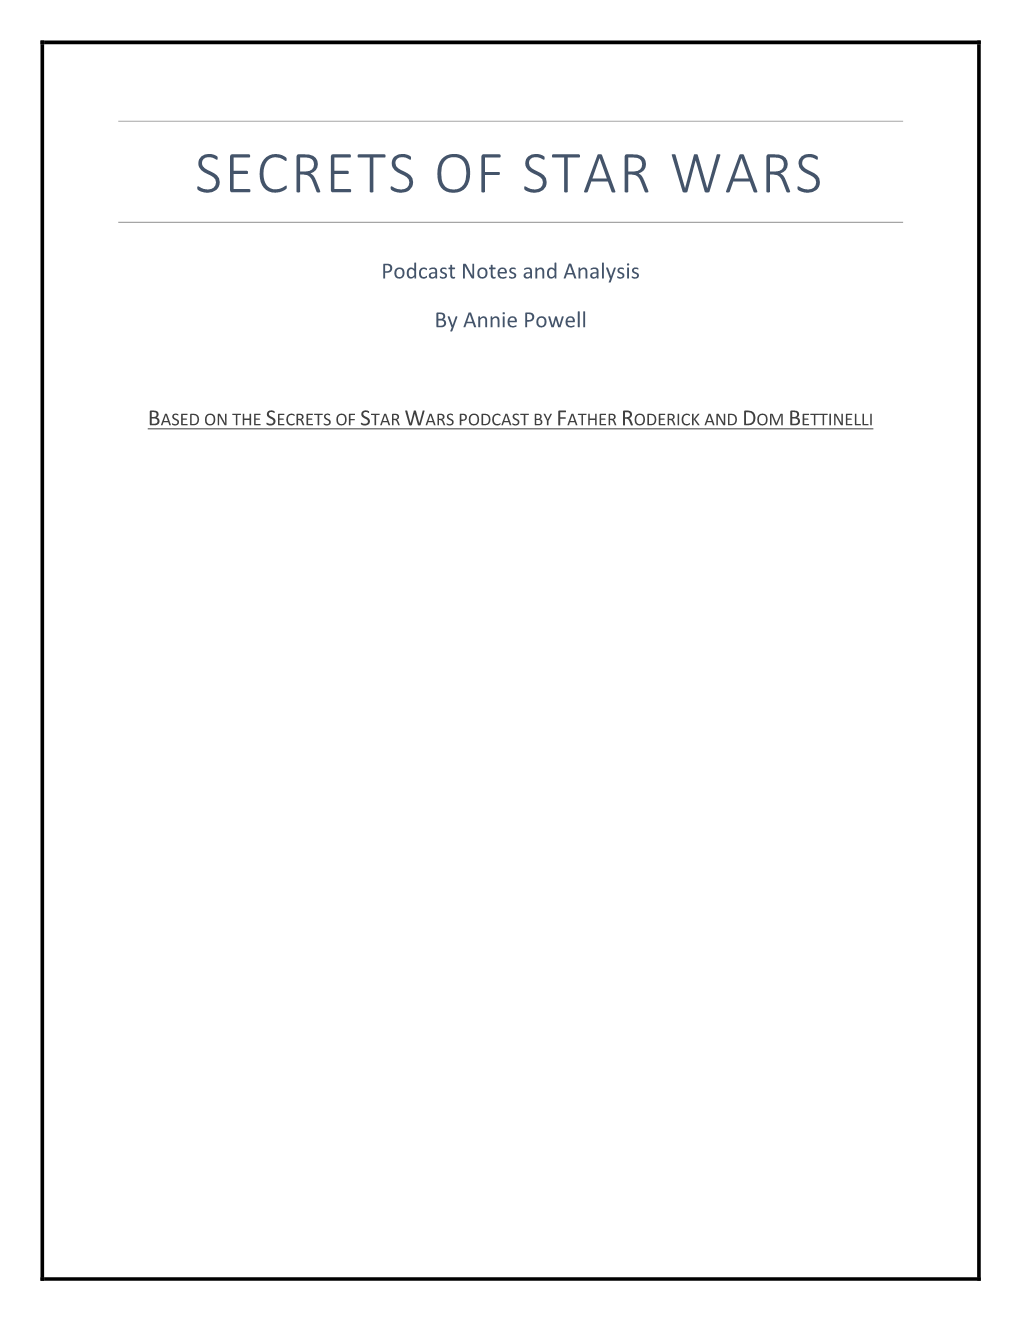 Secrets of Star Wars